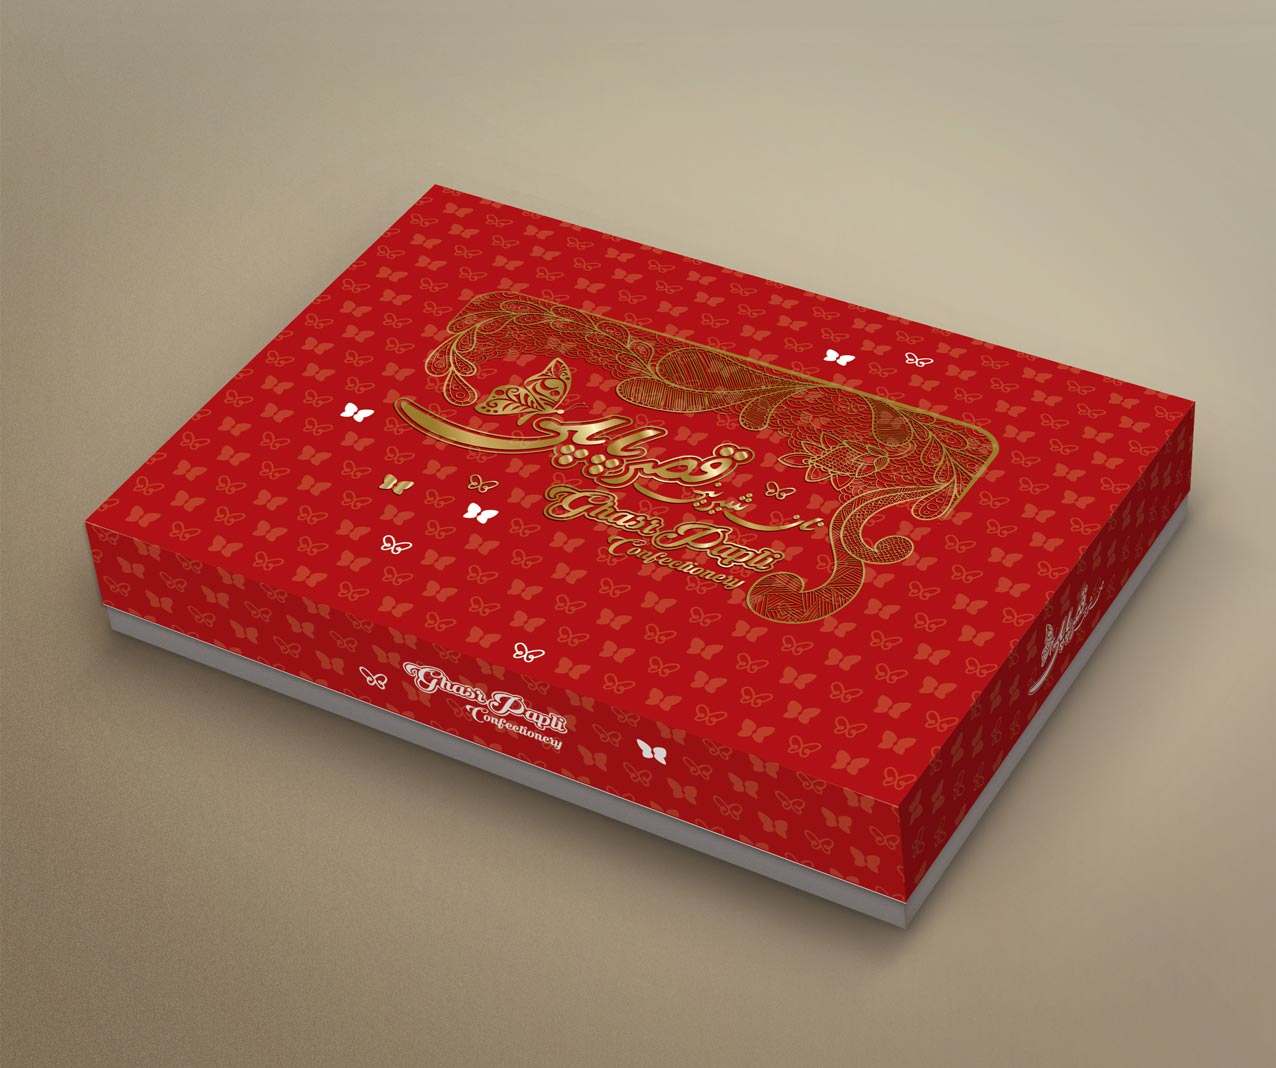 طراحی جعبه شیرینی پاپلی 5